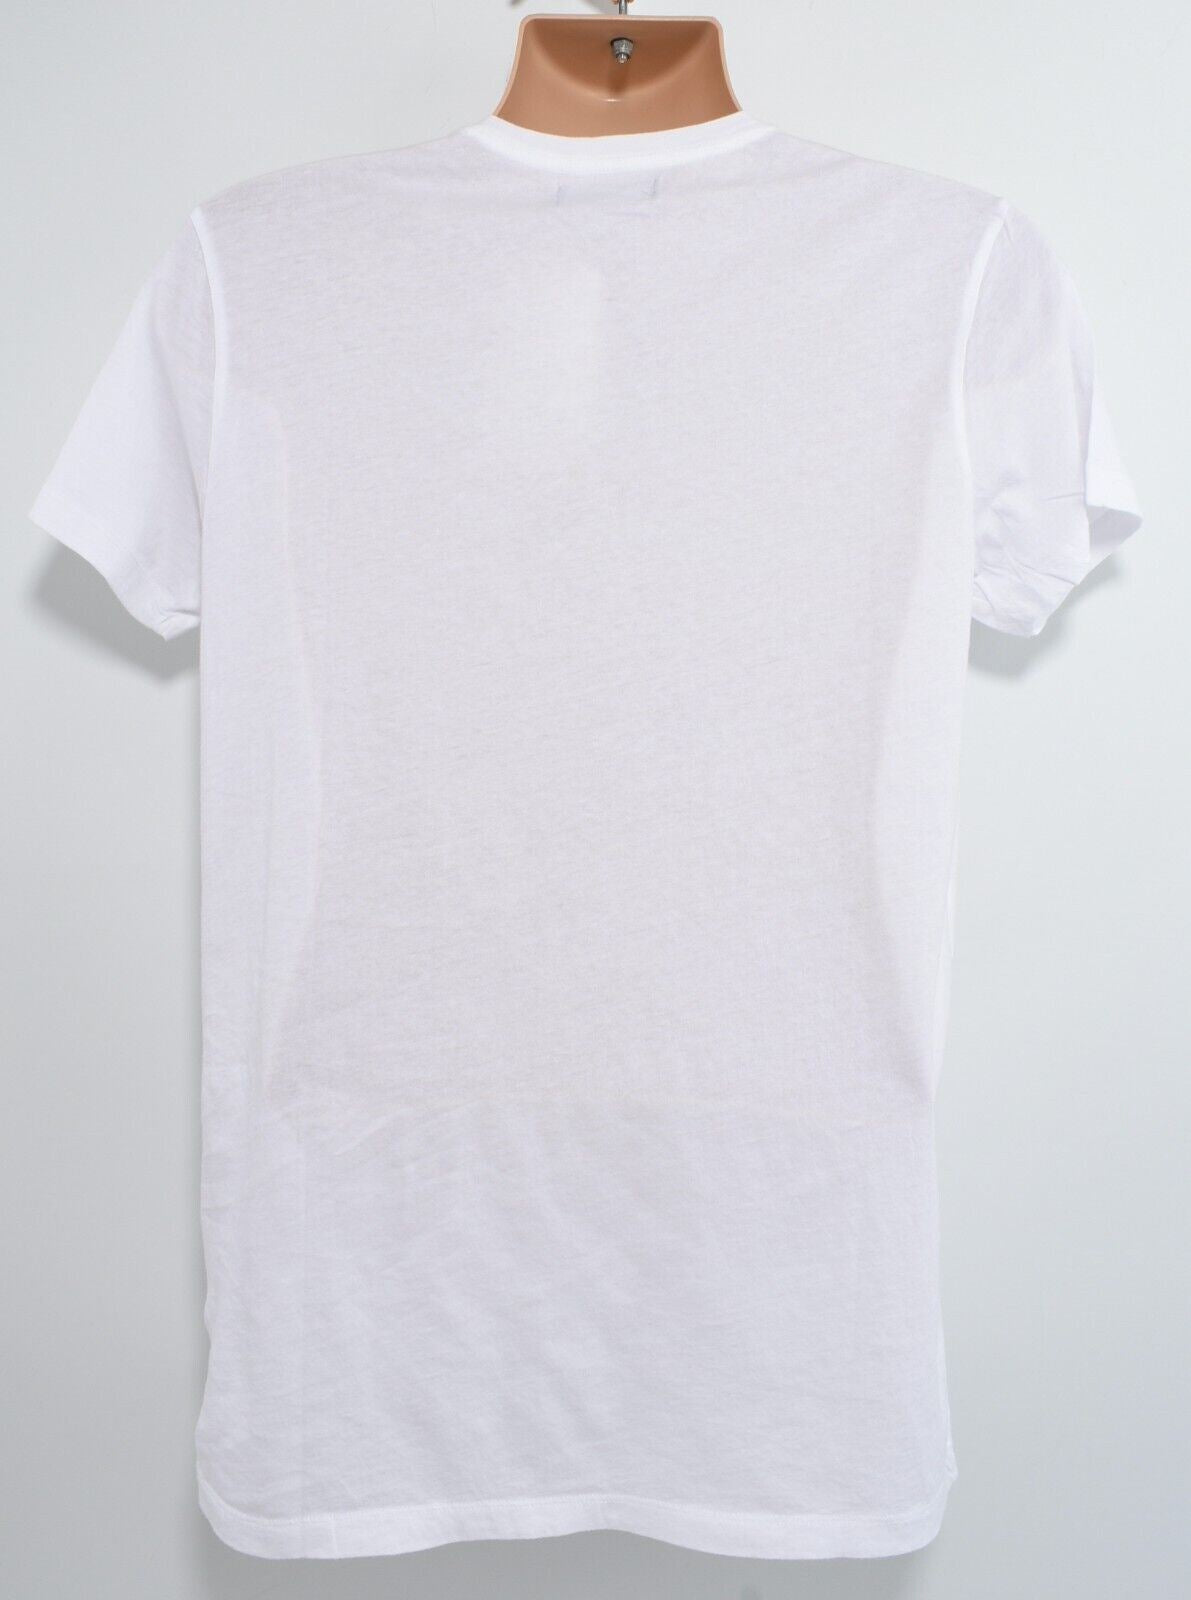 RELIGION Mens Skeleton Logo Crew Neck T-Shirt Top, White, size M